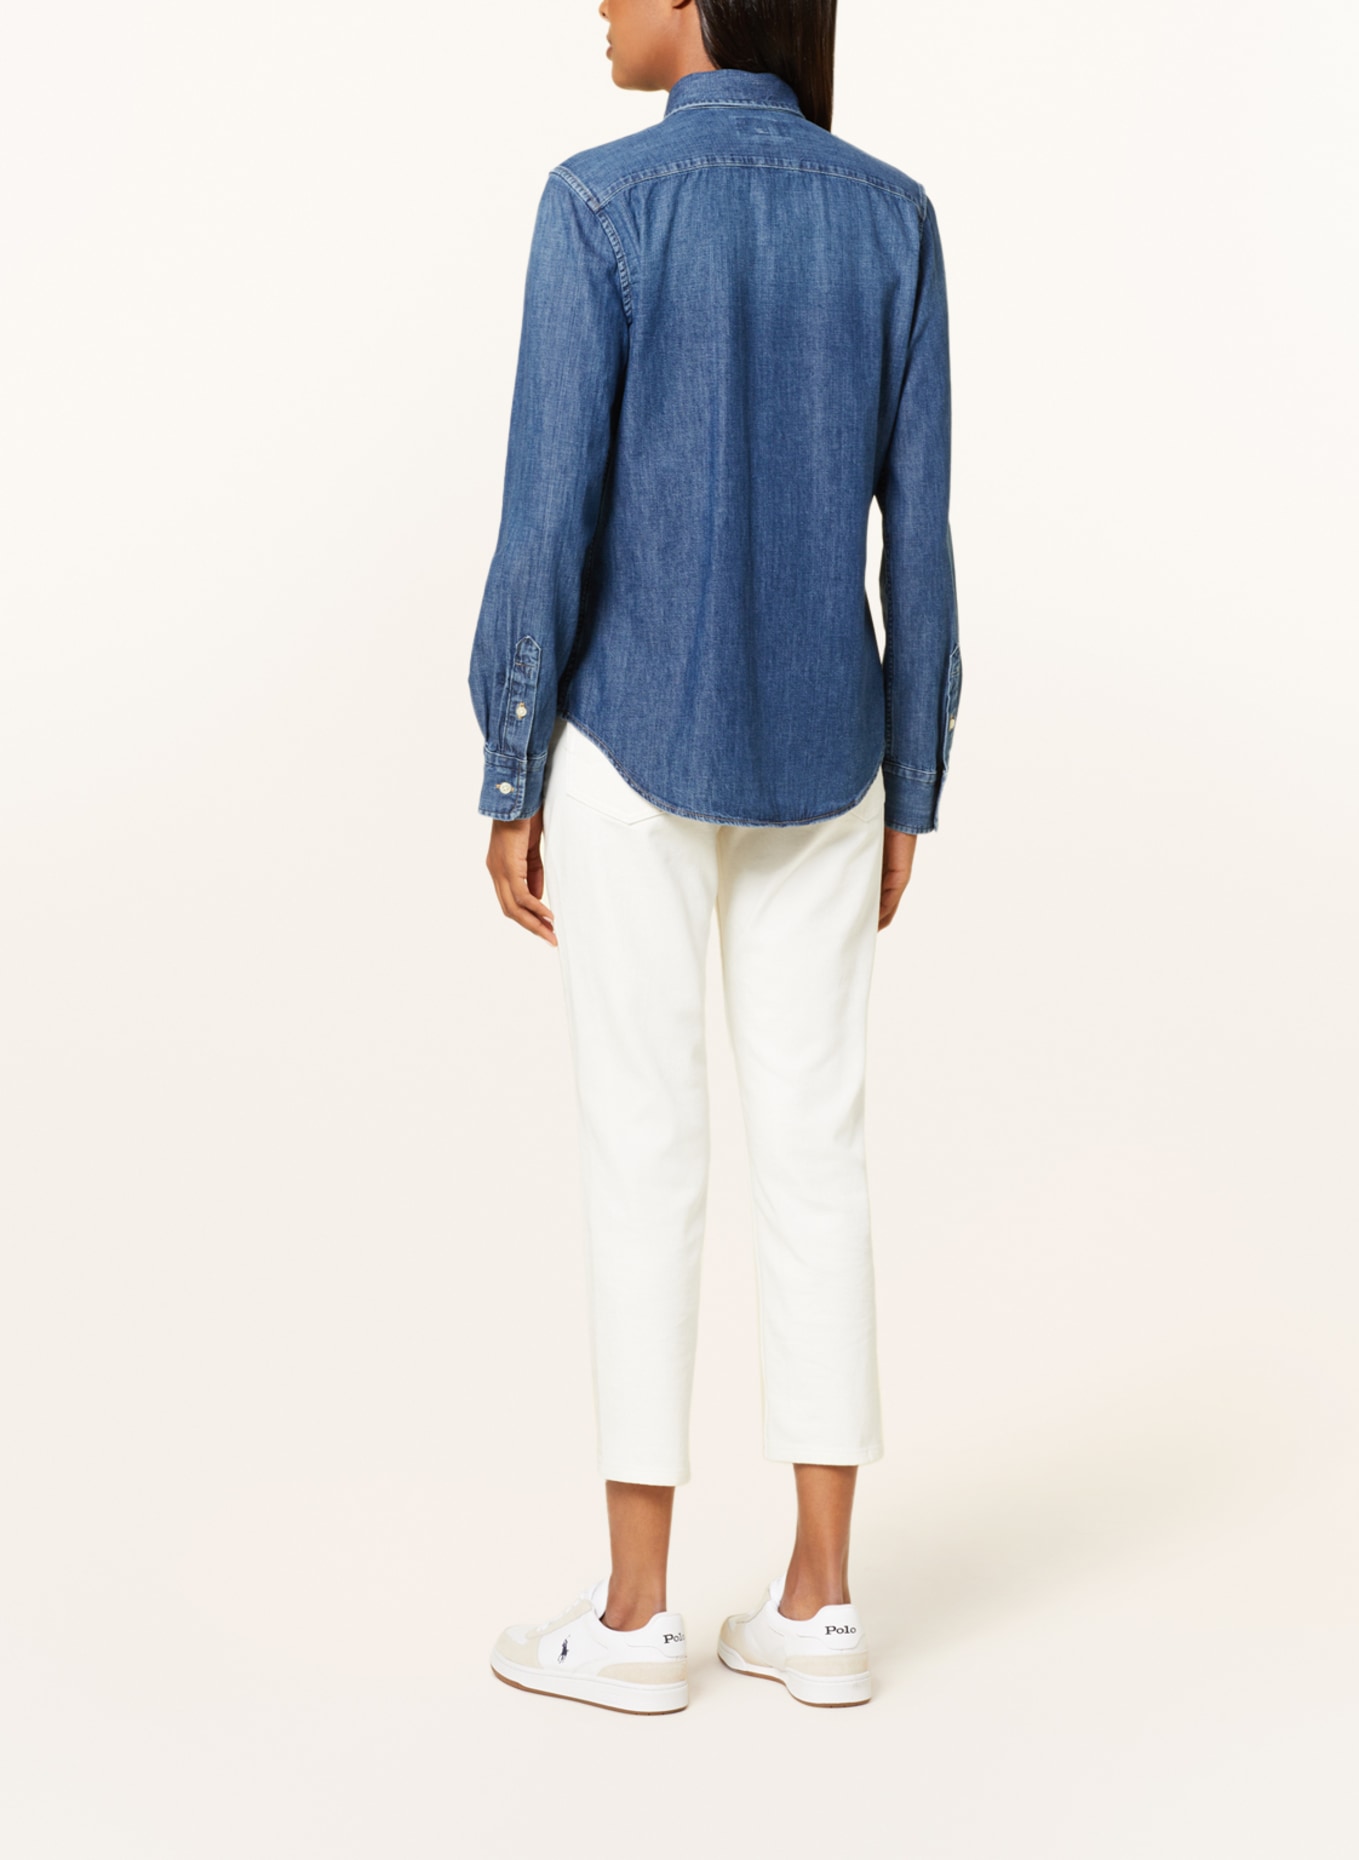 POLO RALPH LAUREN Denim blouse, Color: BLUE (Image 3)